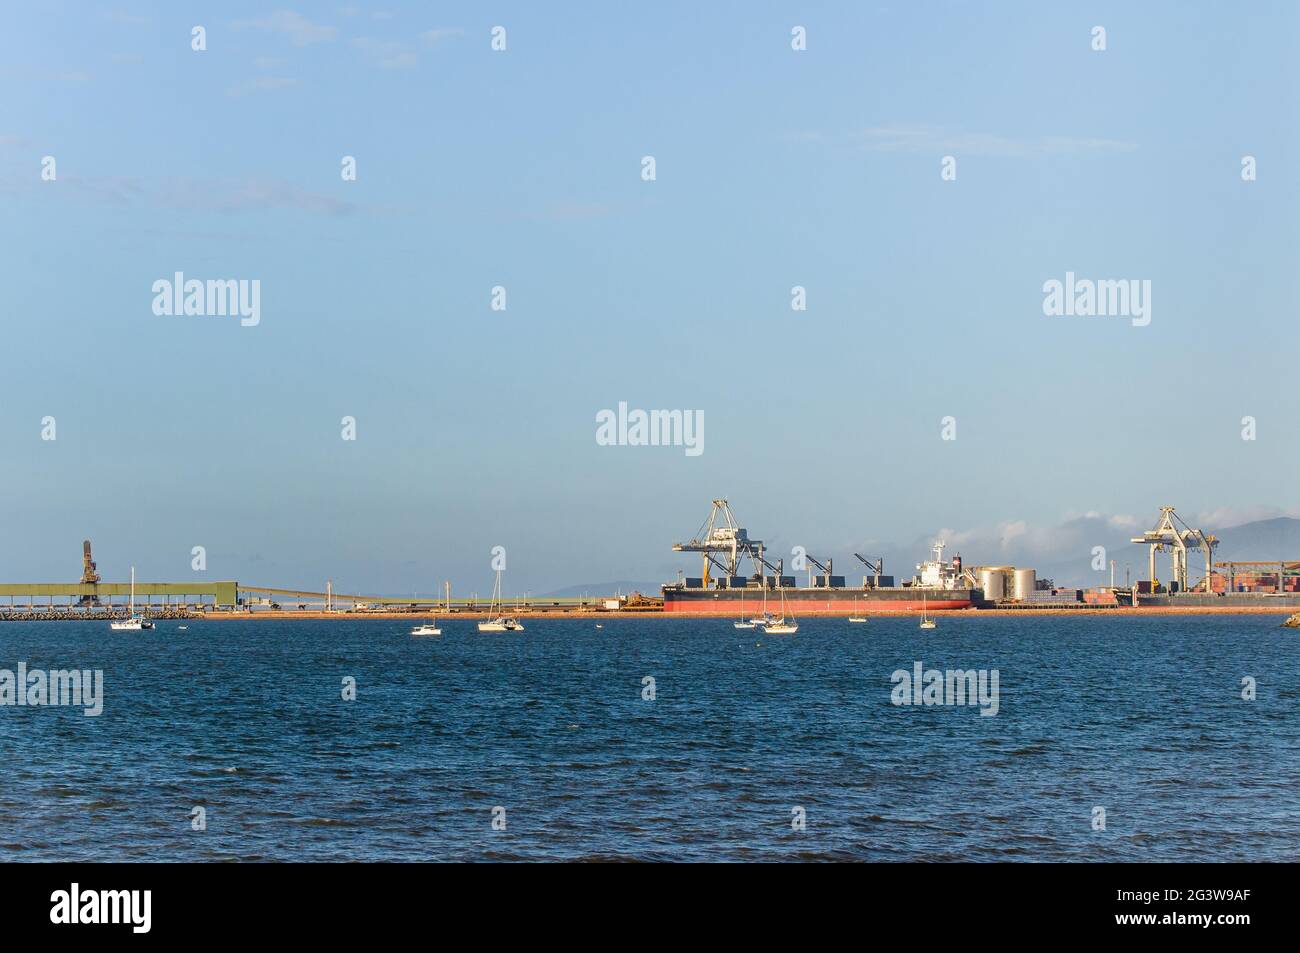 Ein aufgeräumter Blick auf den Horizont des Hafens von Townsville in Australien mit einem geburten und beladenen Massengutfrachter, der auf den Abflug wartet. Stockfoto